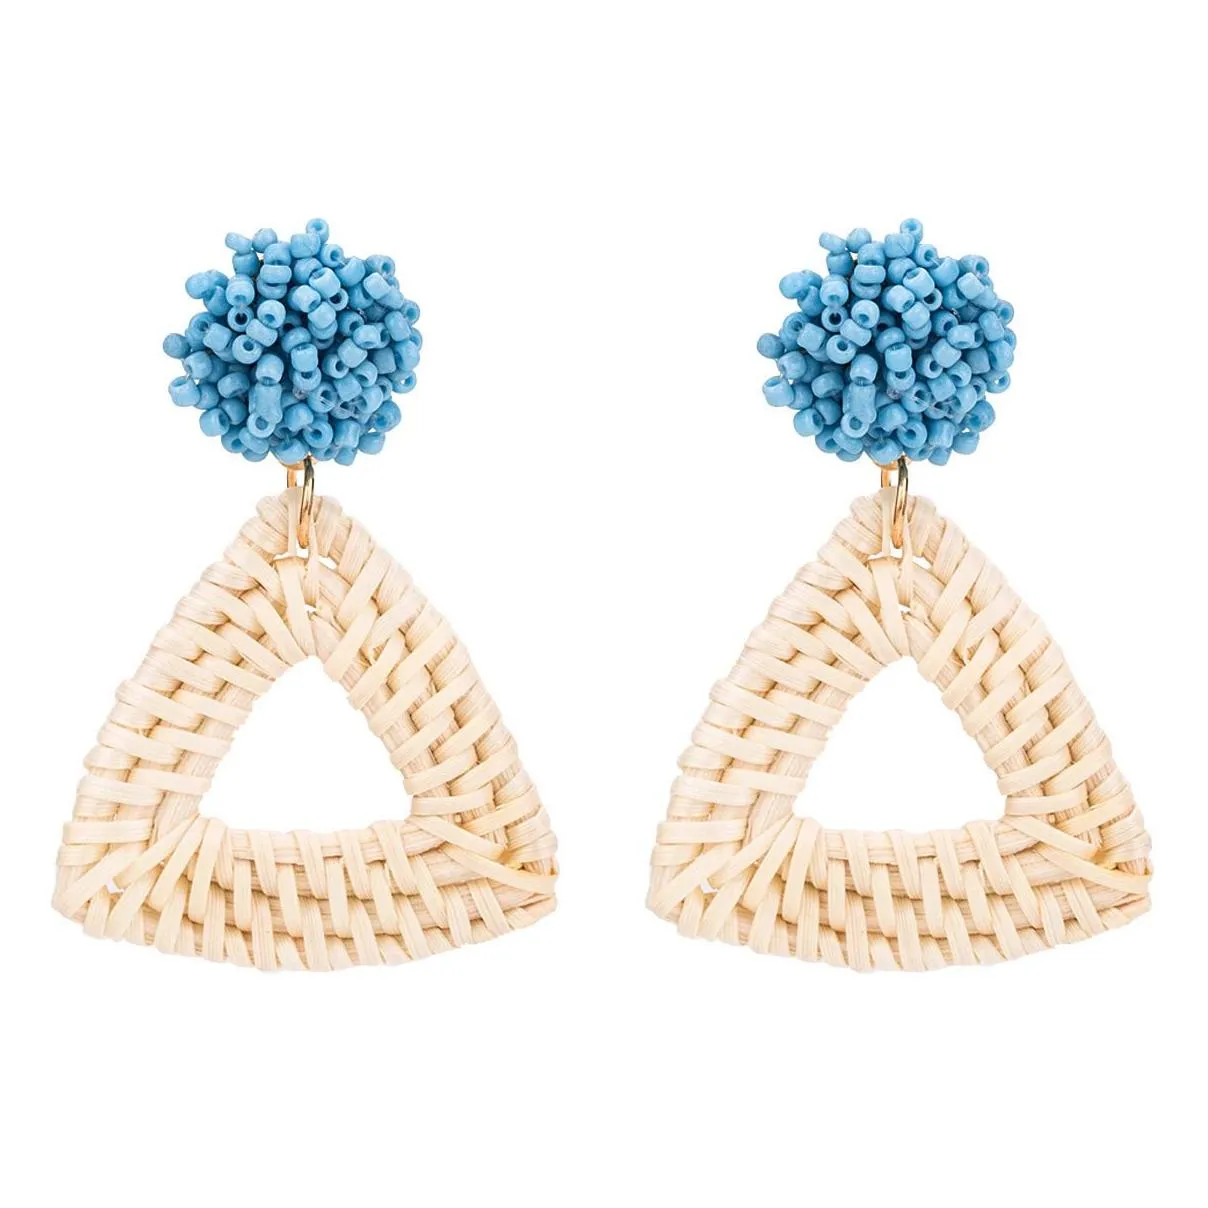 Rattan earrings straw wicker woven pendant earrings triangle ladies girls light handmade ball